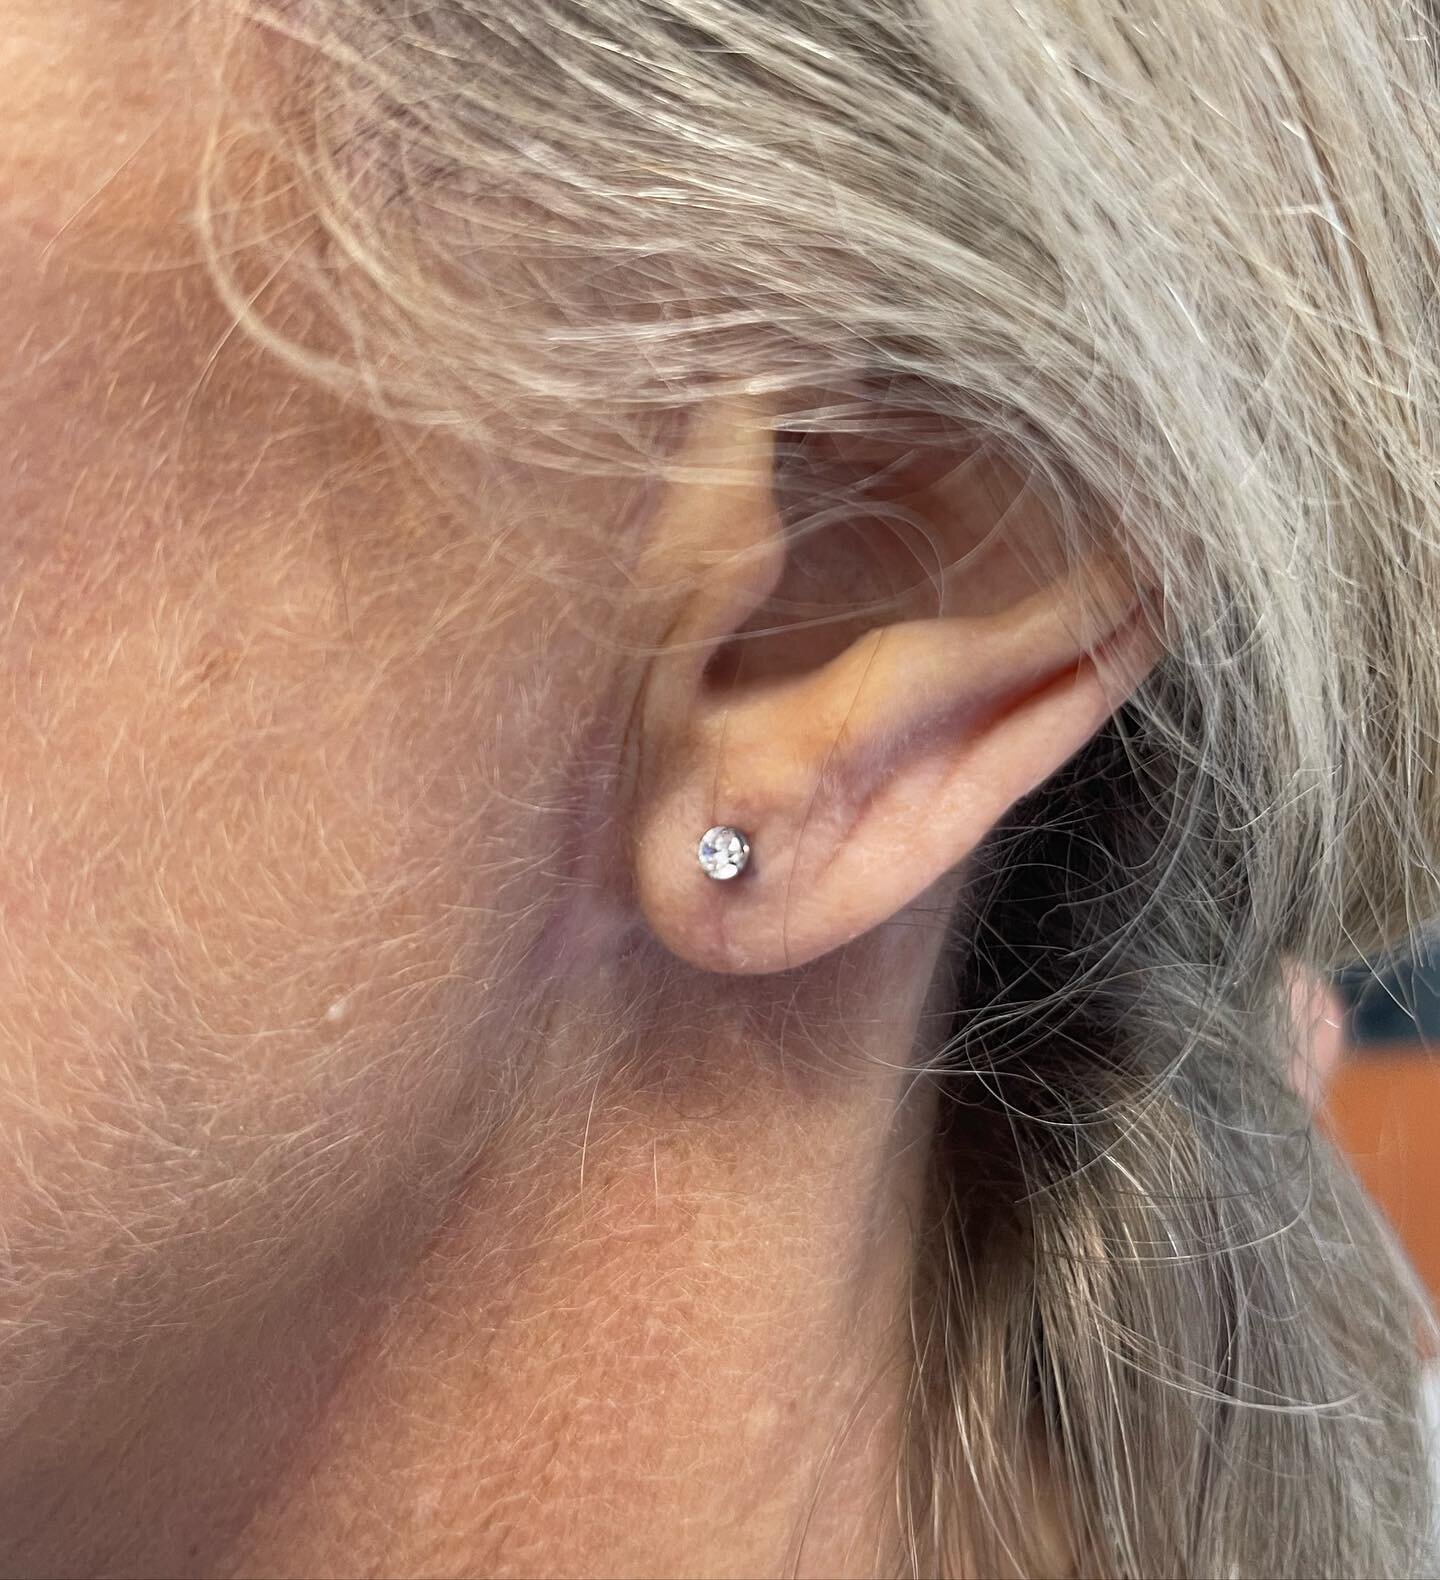 New piercing after ear lobe surgery:::::::::;;::::;;;;;;;;;;:;;#titaniumjewelry #titaniumpiercing #earpiercing #lobepiercing #bodypiercing #piercingstudio #professionalpiercer #profesionalpiercing #bodymod #miamipiercing #floridapiercer #